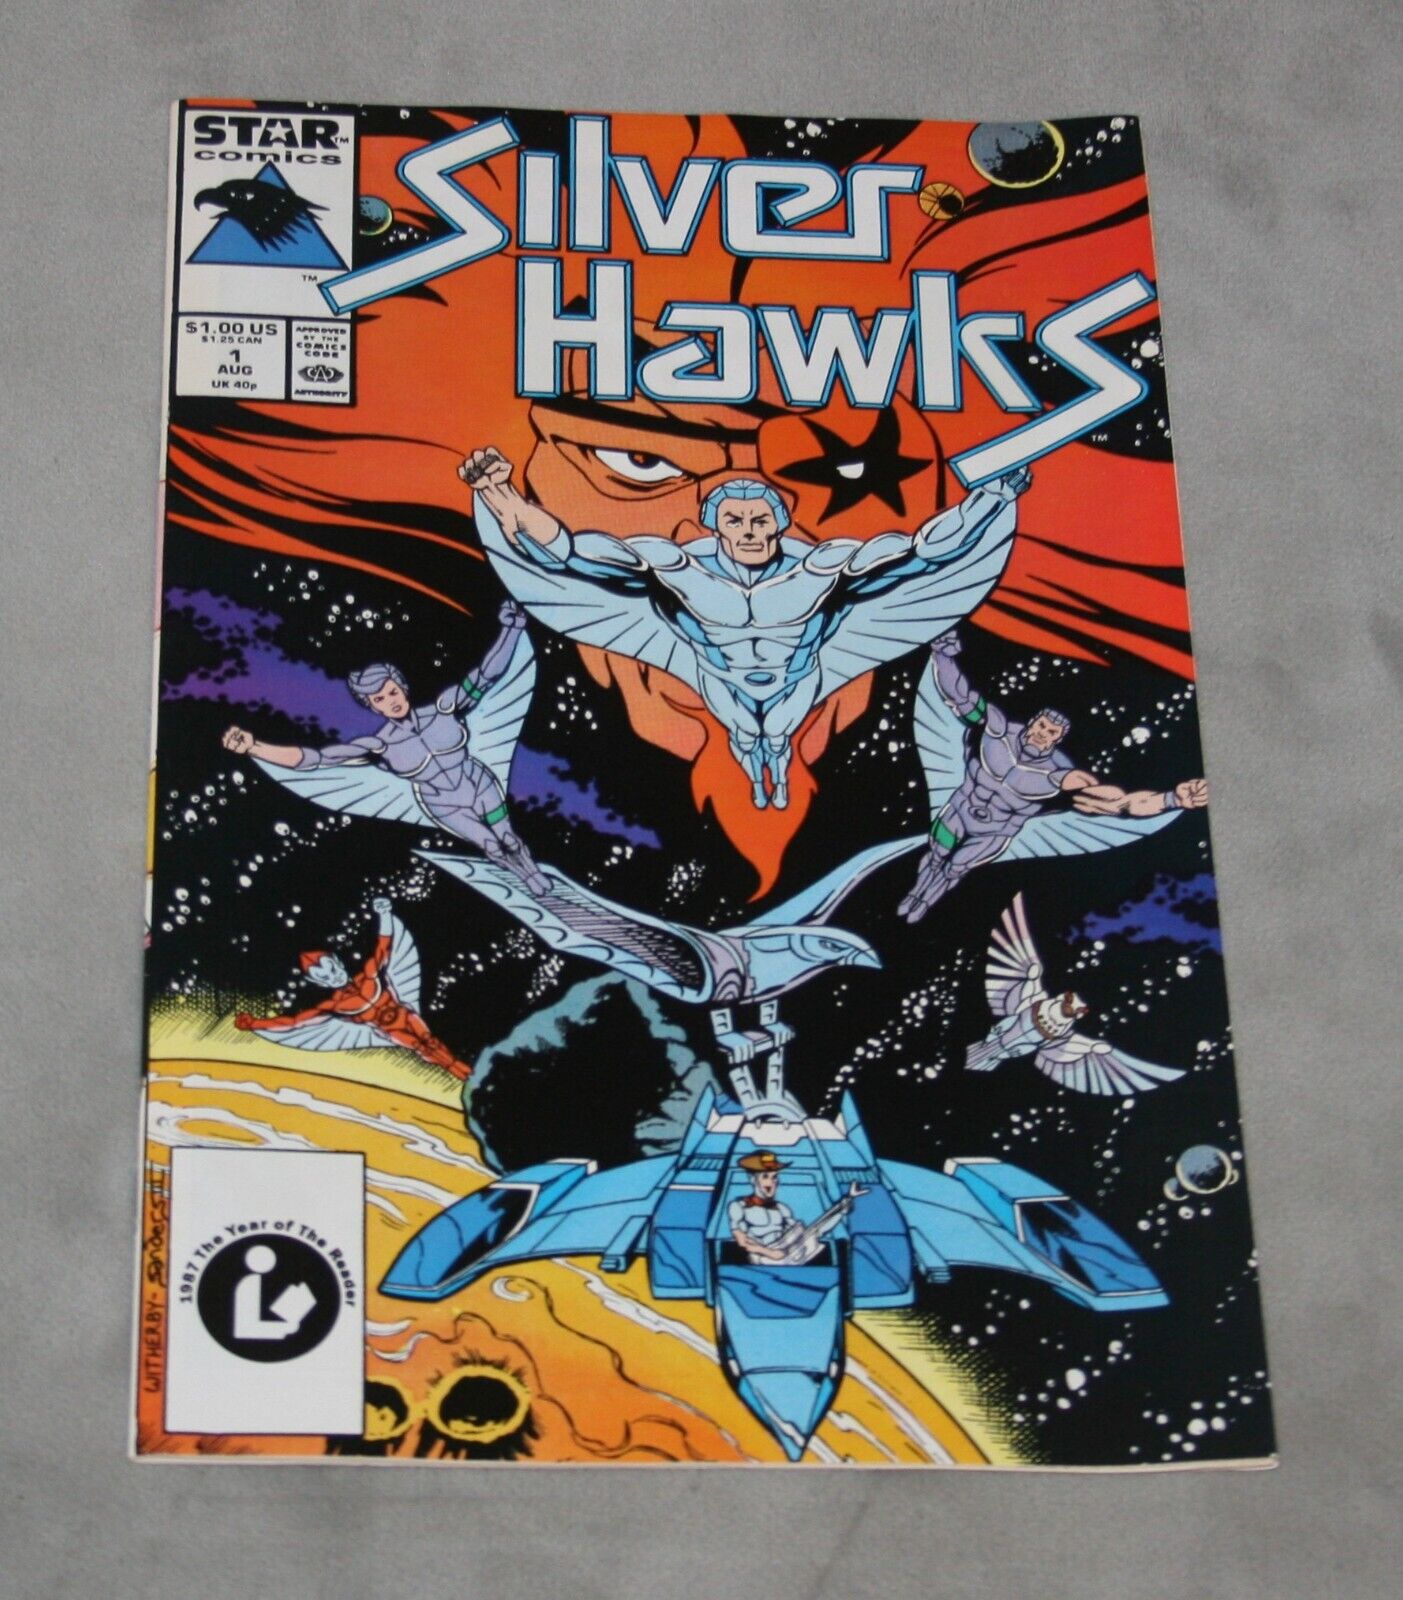 Silver Hawks #1 - 1987 Star Comics/Marvel - 🔥High Grade at least Near Mint💥